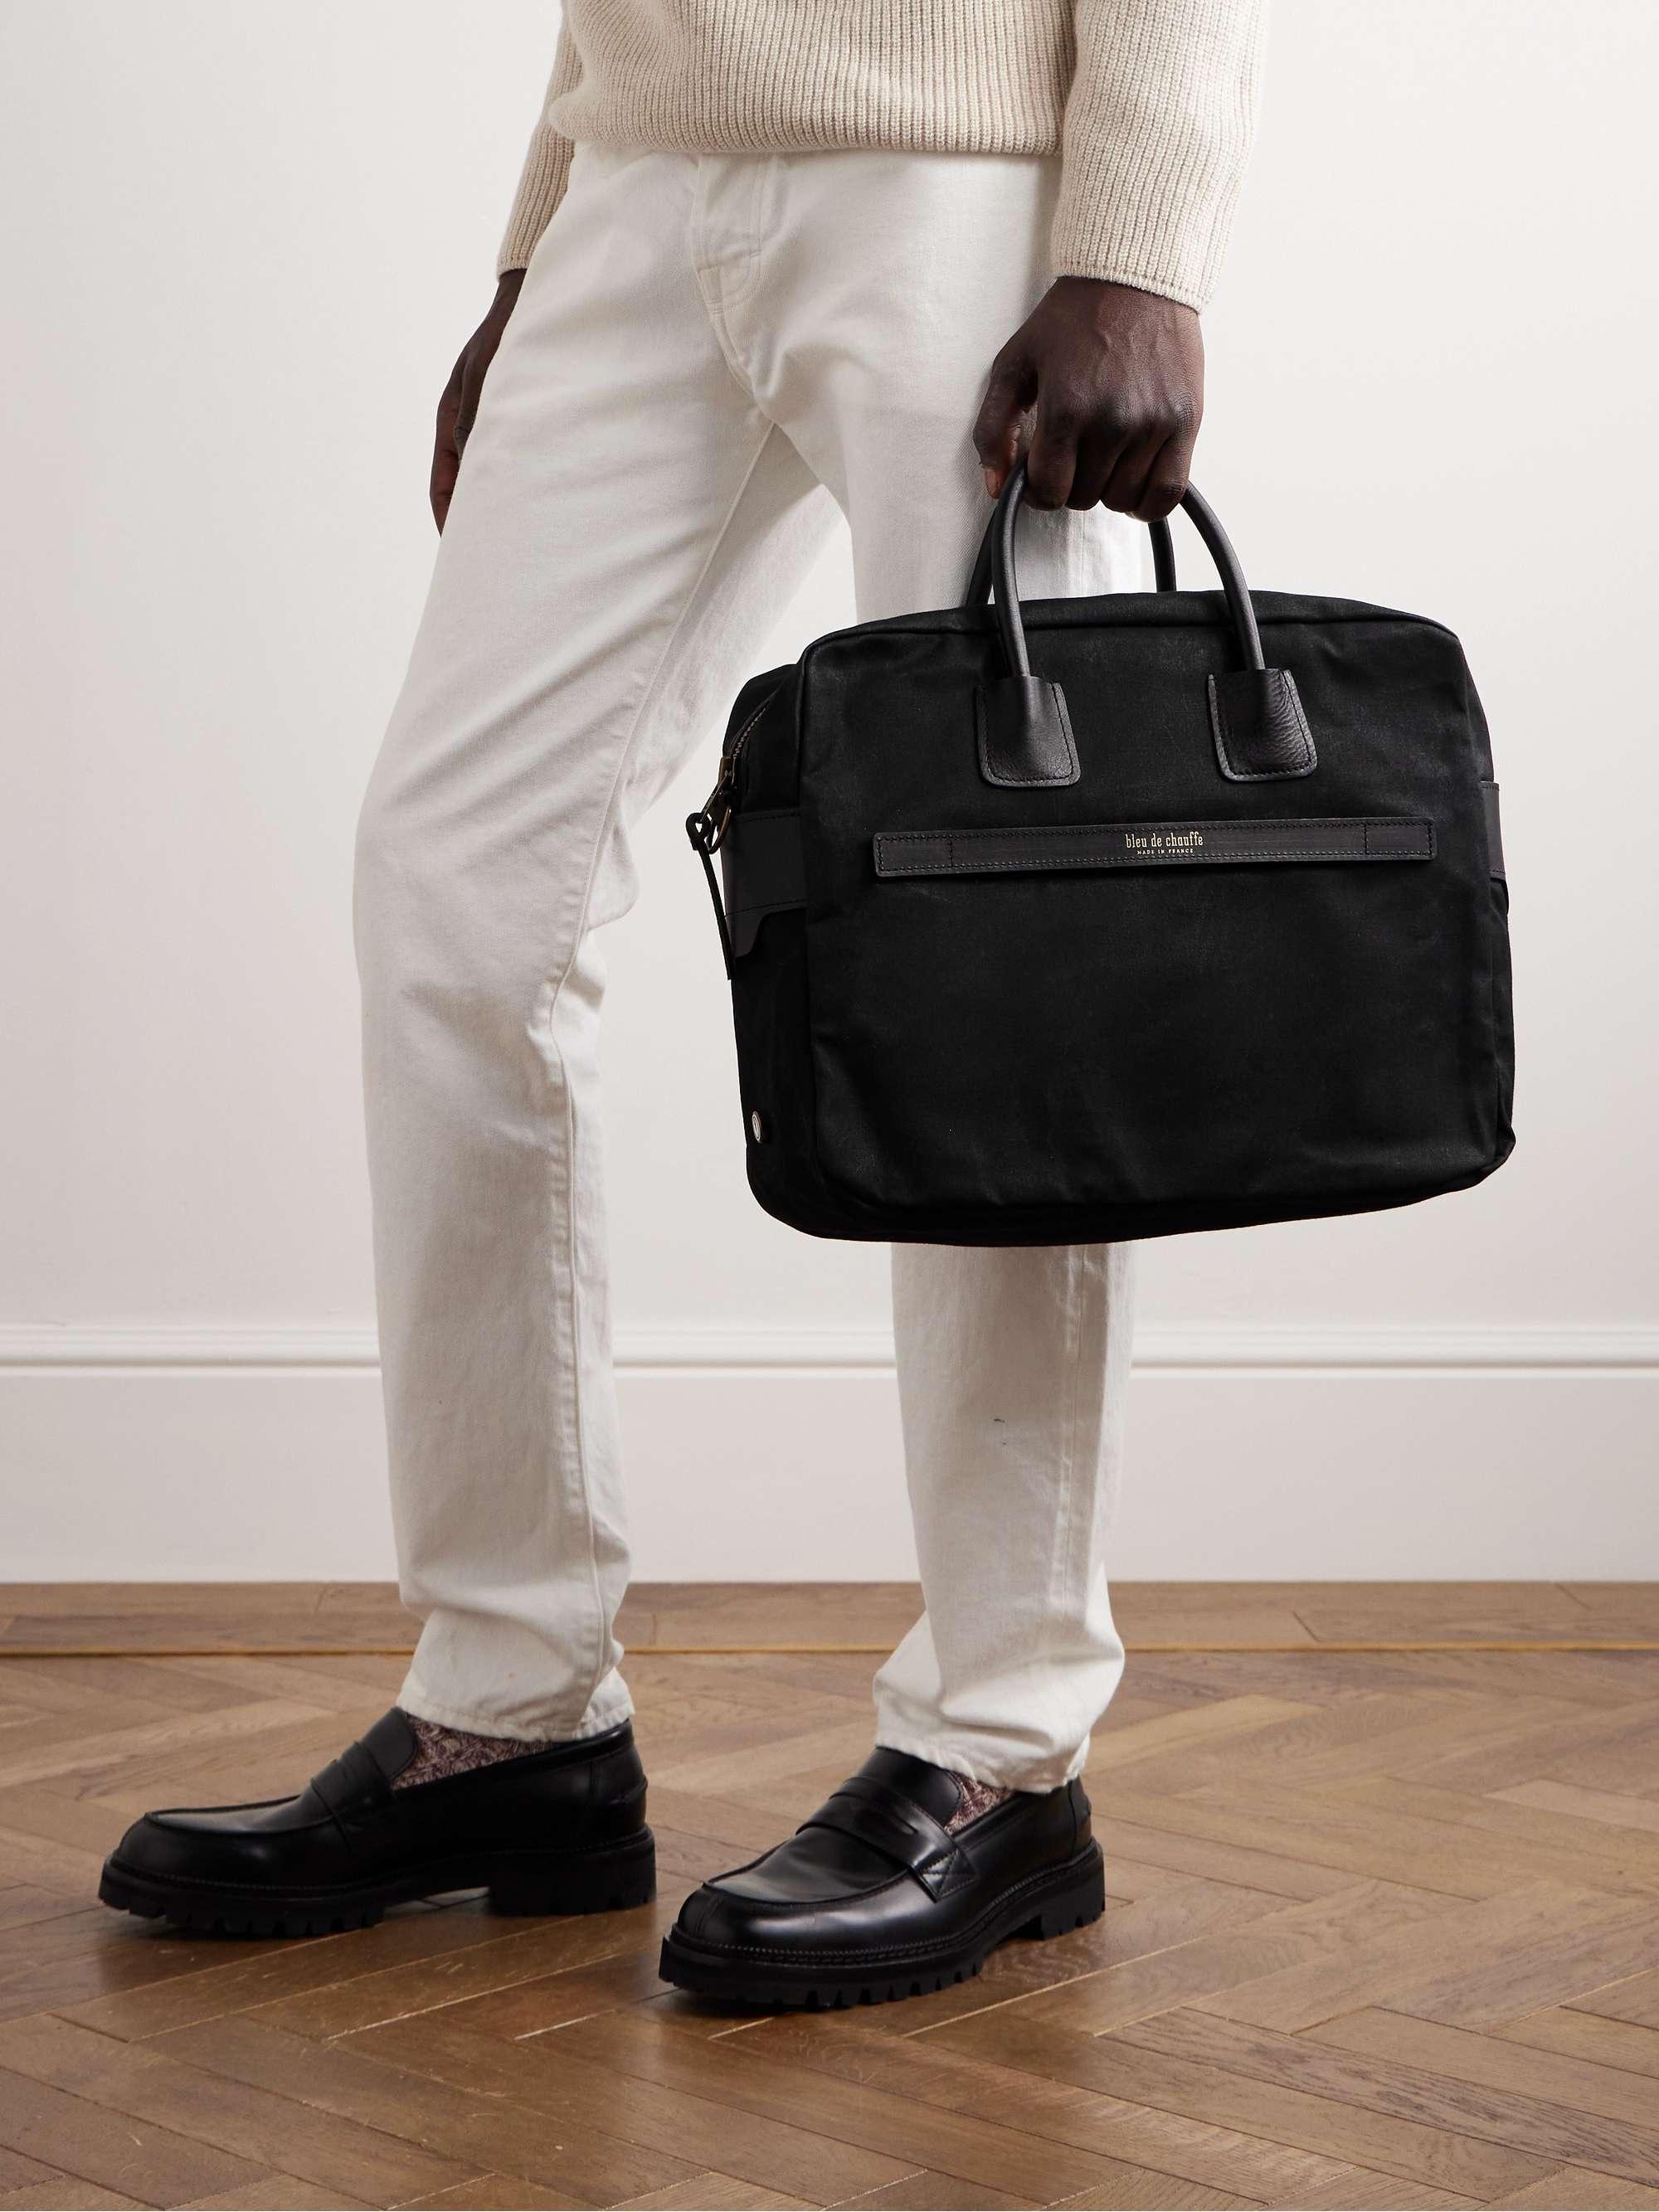 BLEU DE CHAUFFE Report Leather-Trimmed Cotton-Canvas Briefcase for